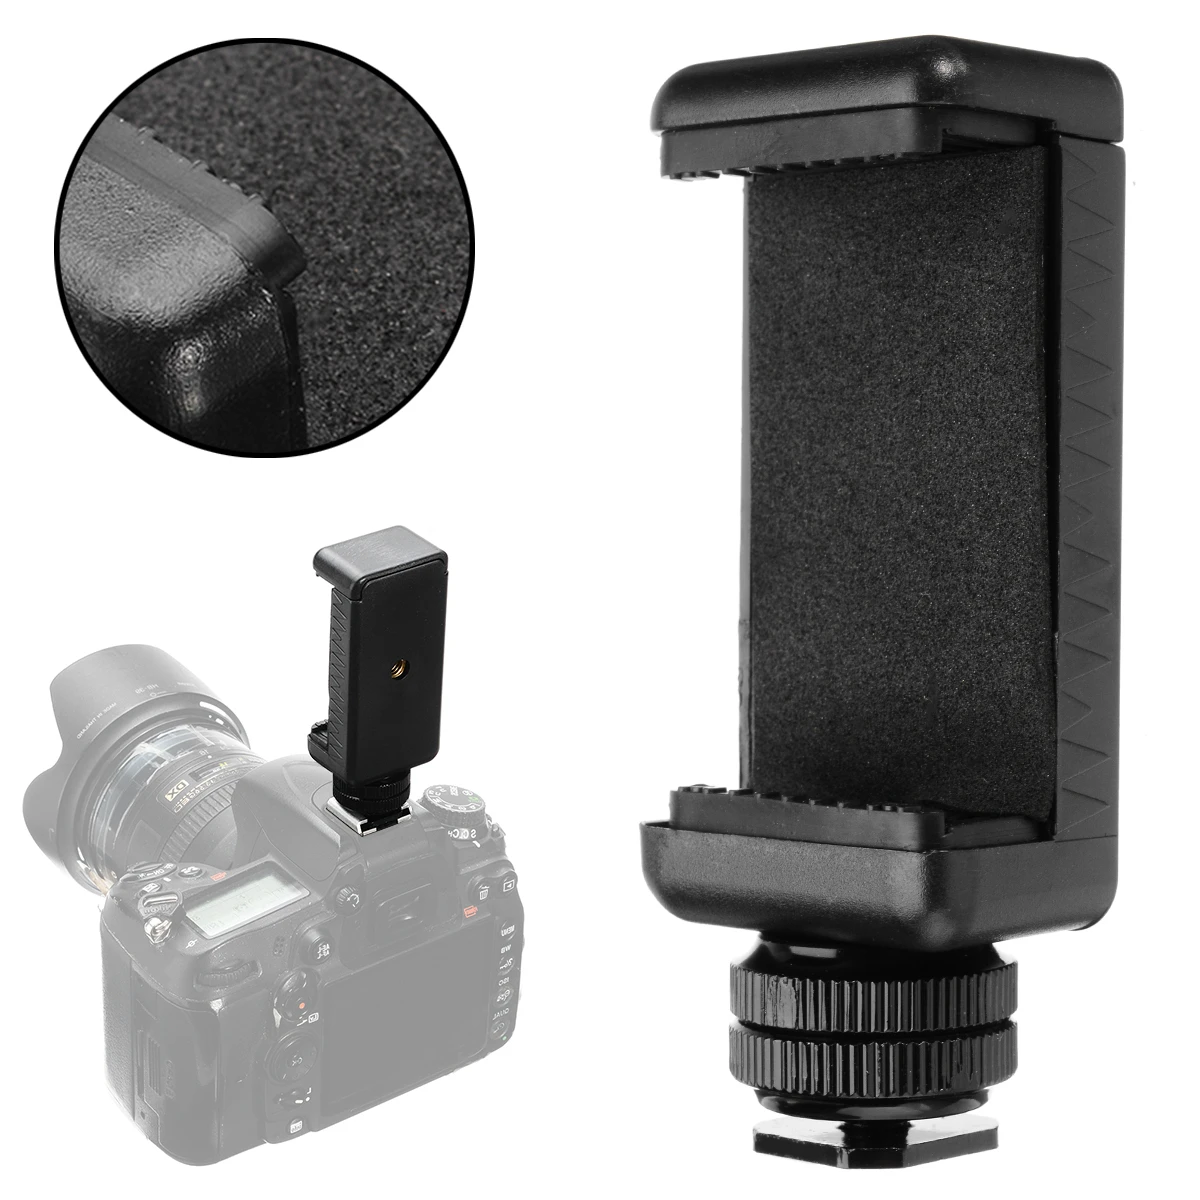 

Универсальный держатель телефона с зажимом для камеры DSLR, с резьбой 1/4-20, 58-88 мм, черный